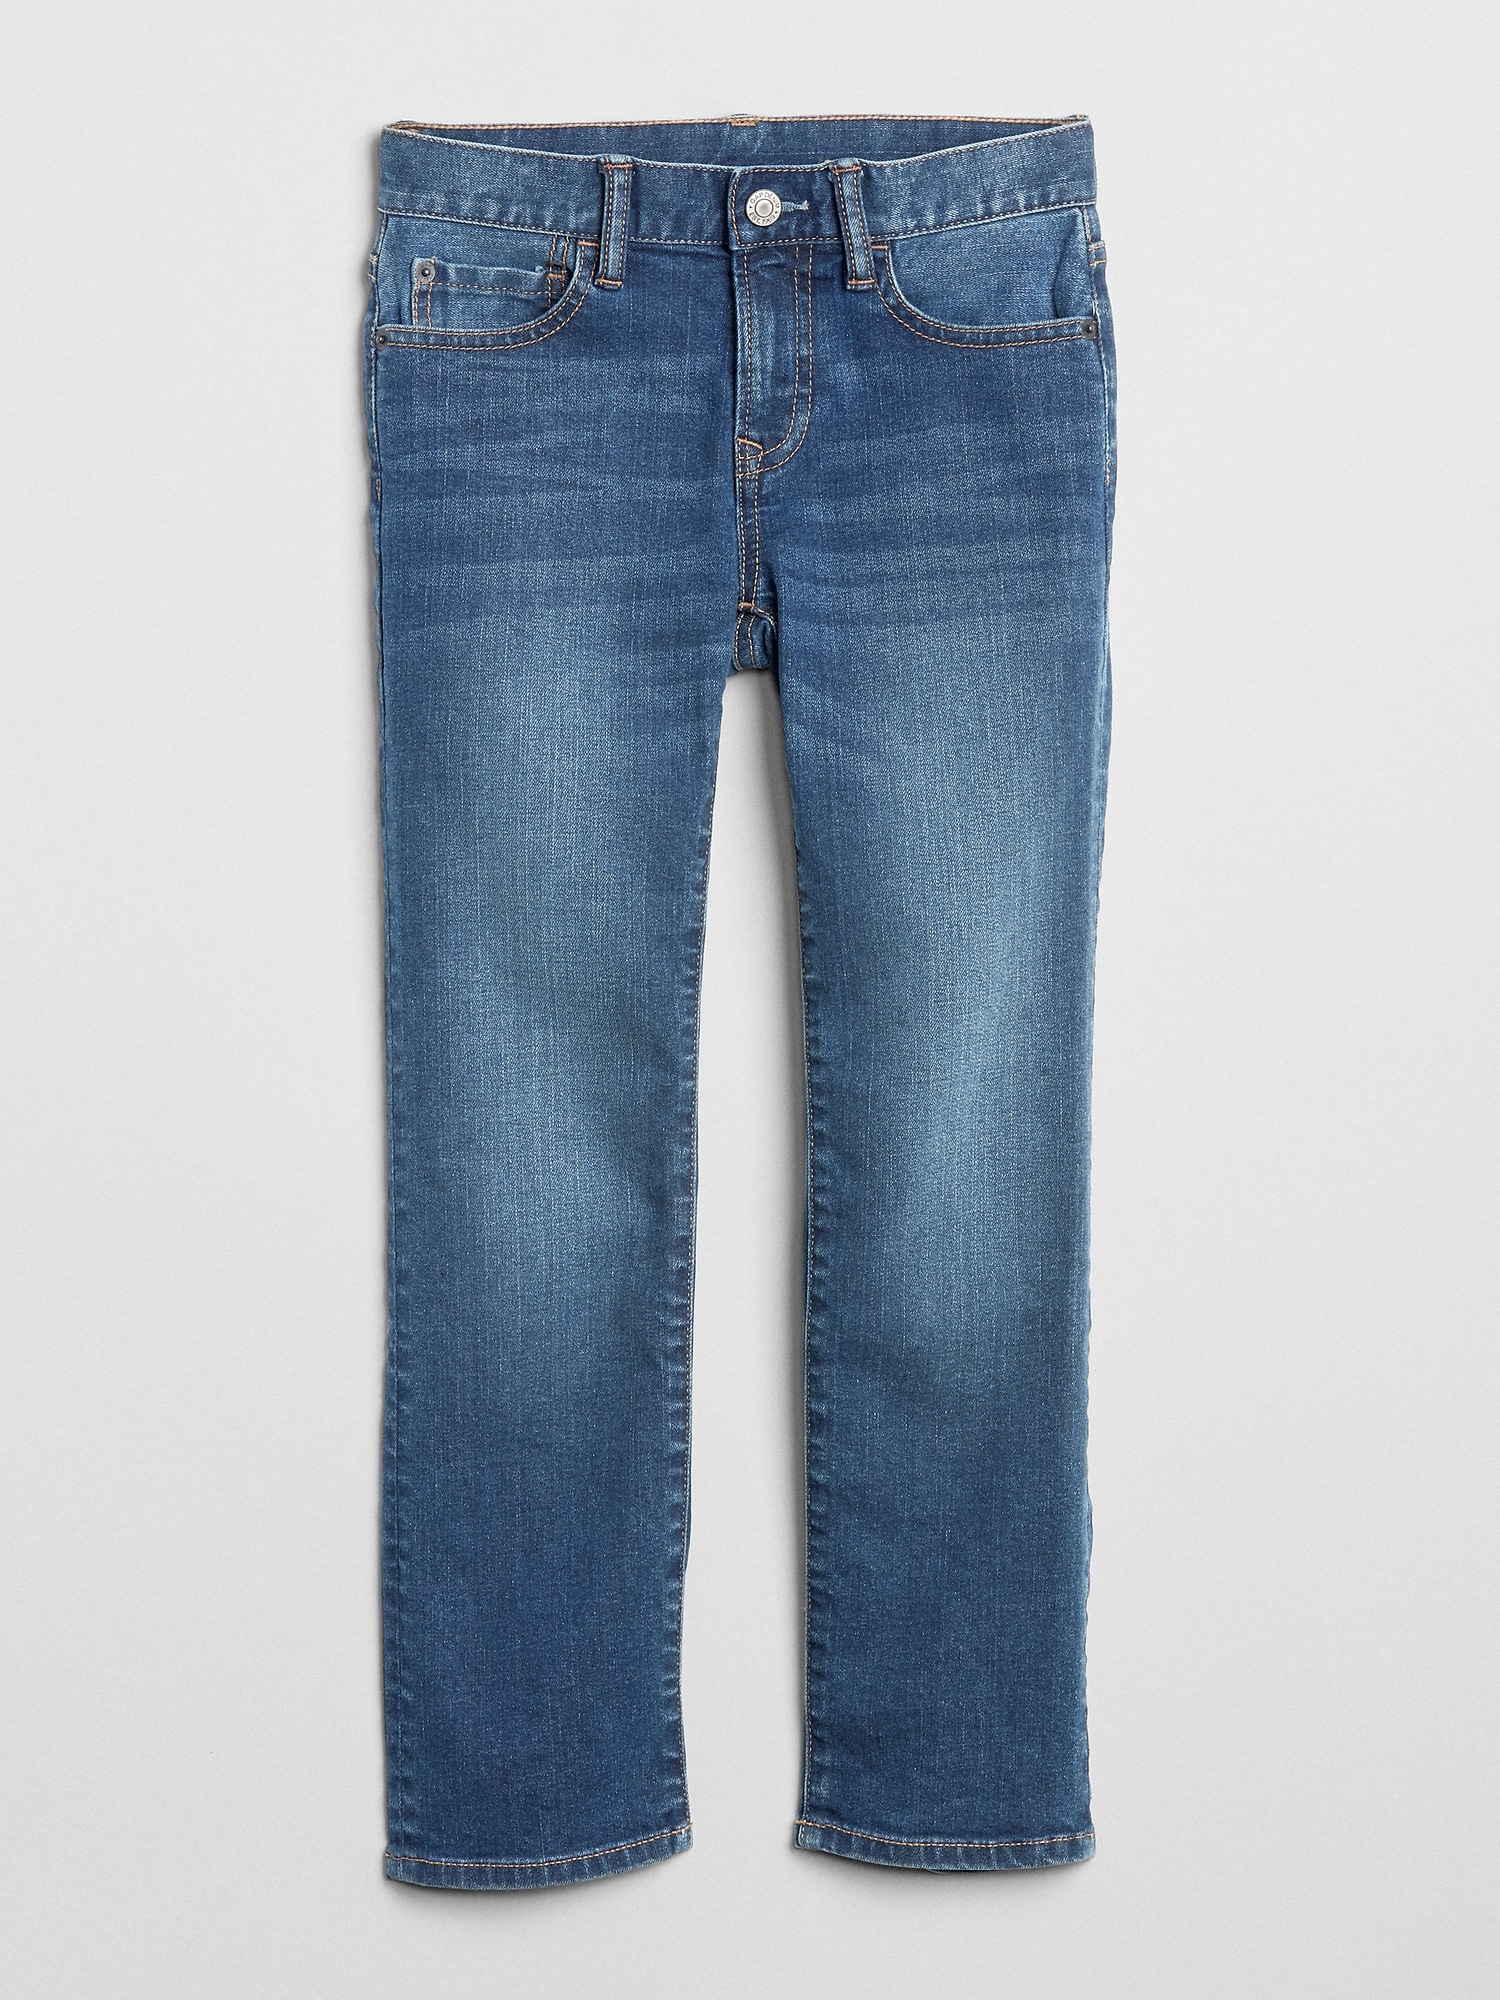 distressed jean leggings